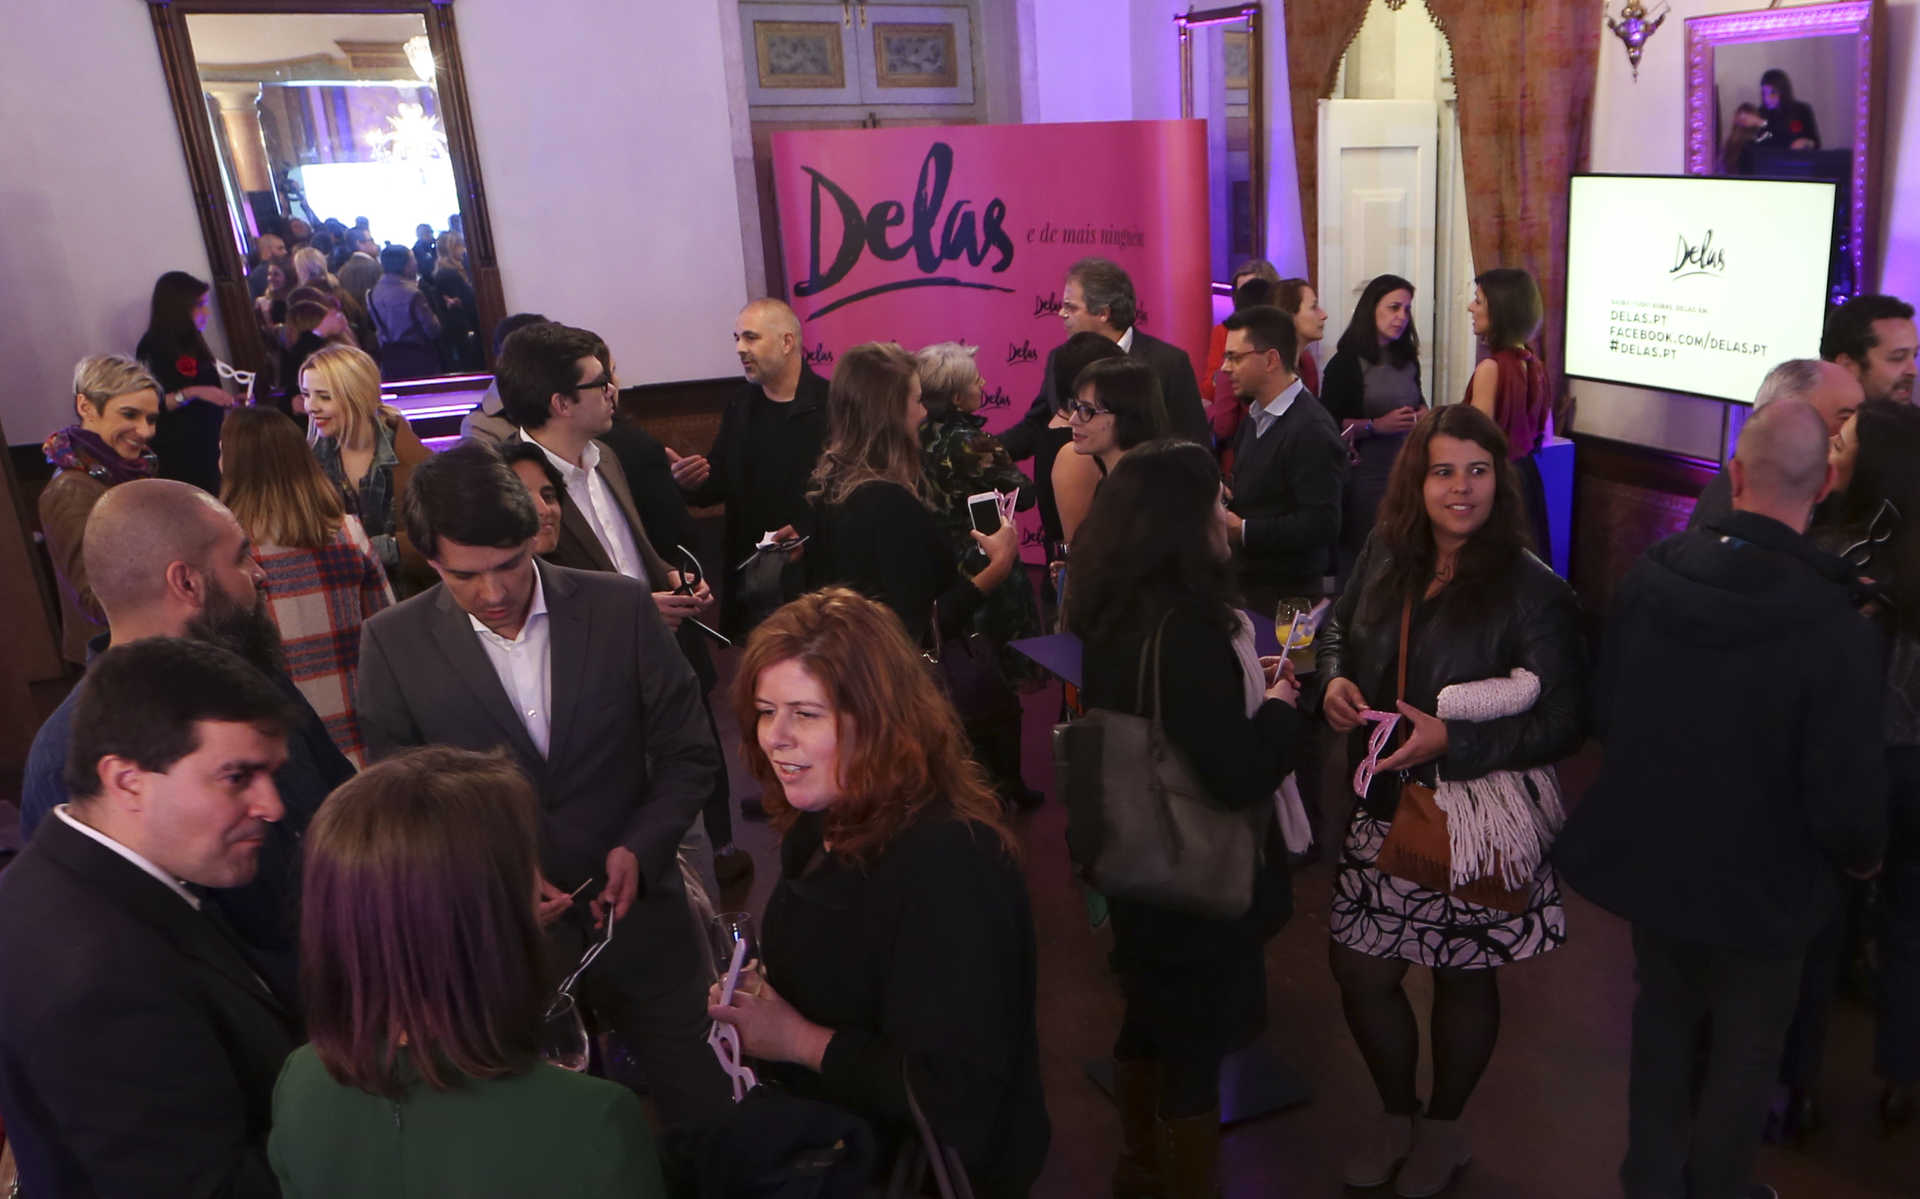 Veja as imagens na nossa galeria da festa de apresentação do Delas.pt no Palácio de São Vicente, em Lisboa